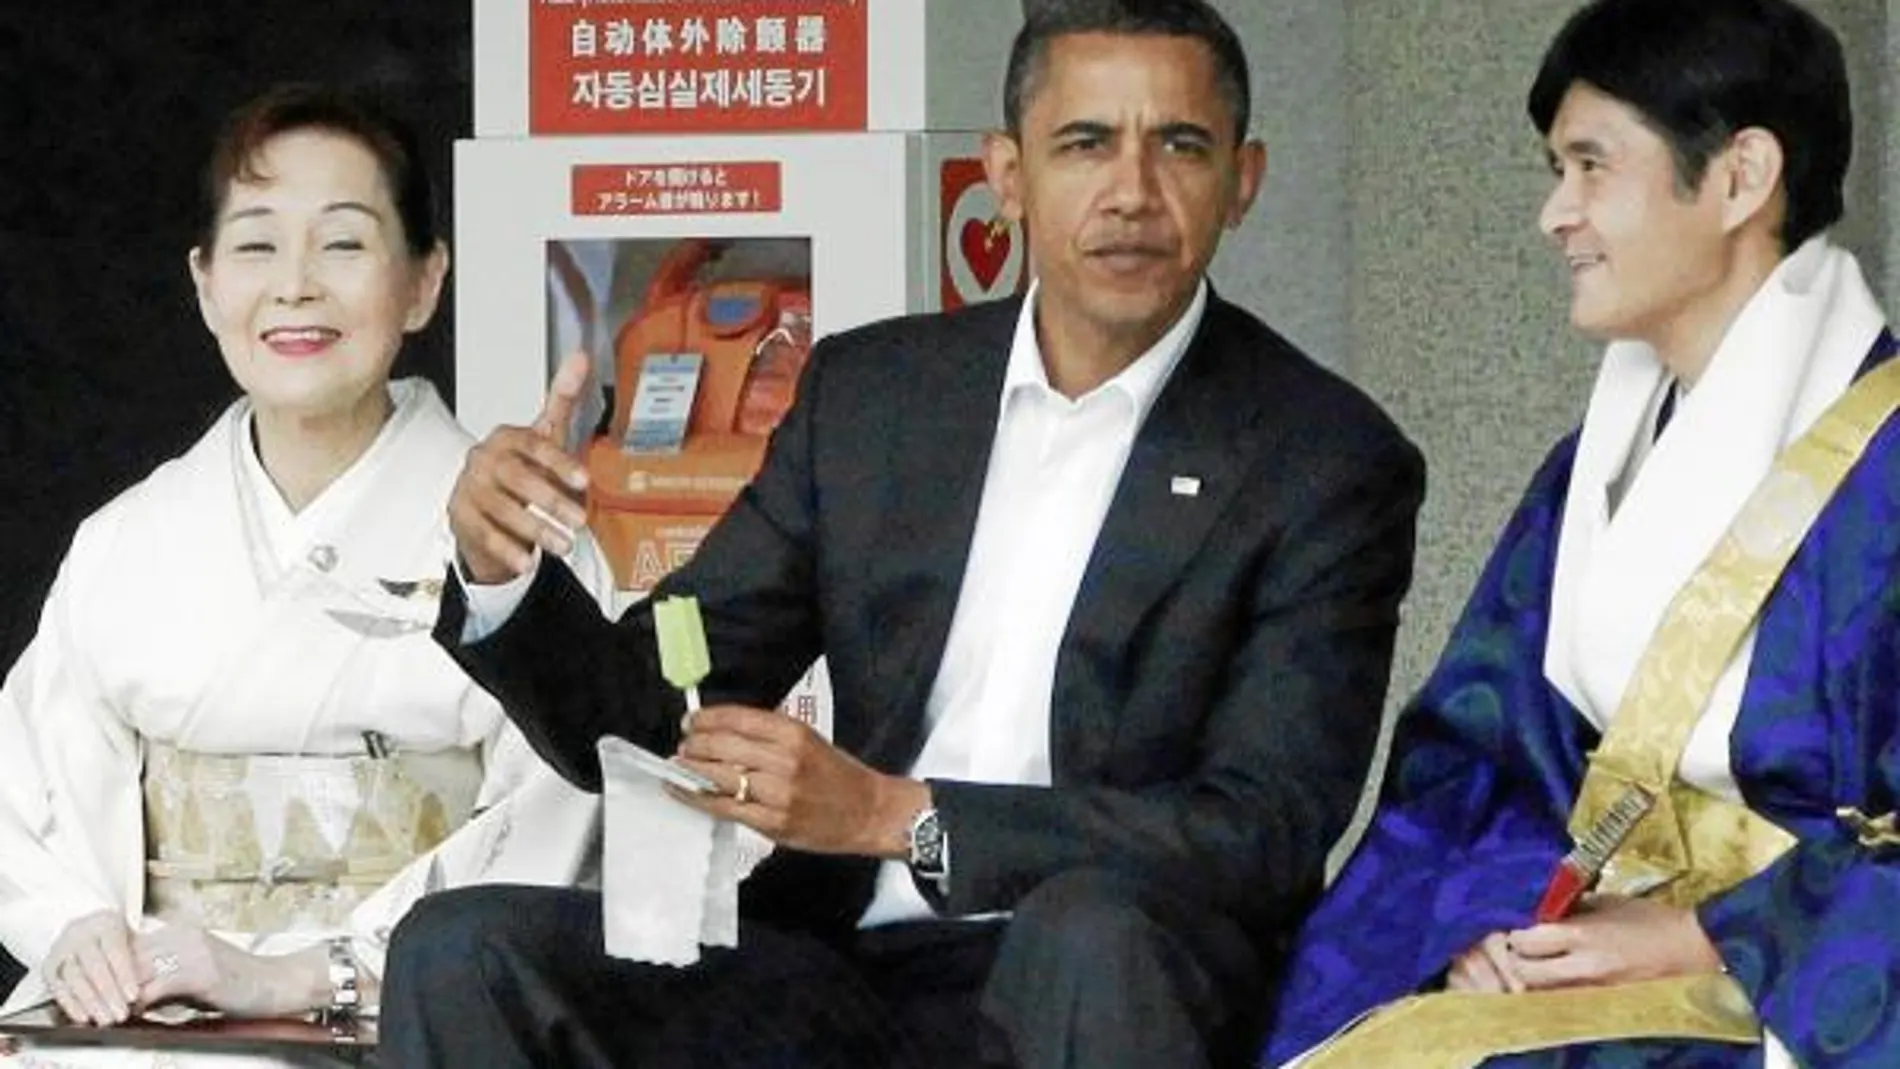 Obama disfruta de un helado en su visita a Kamakura (Japón)